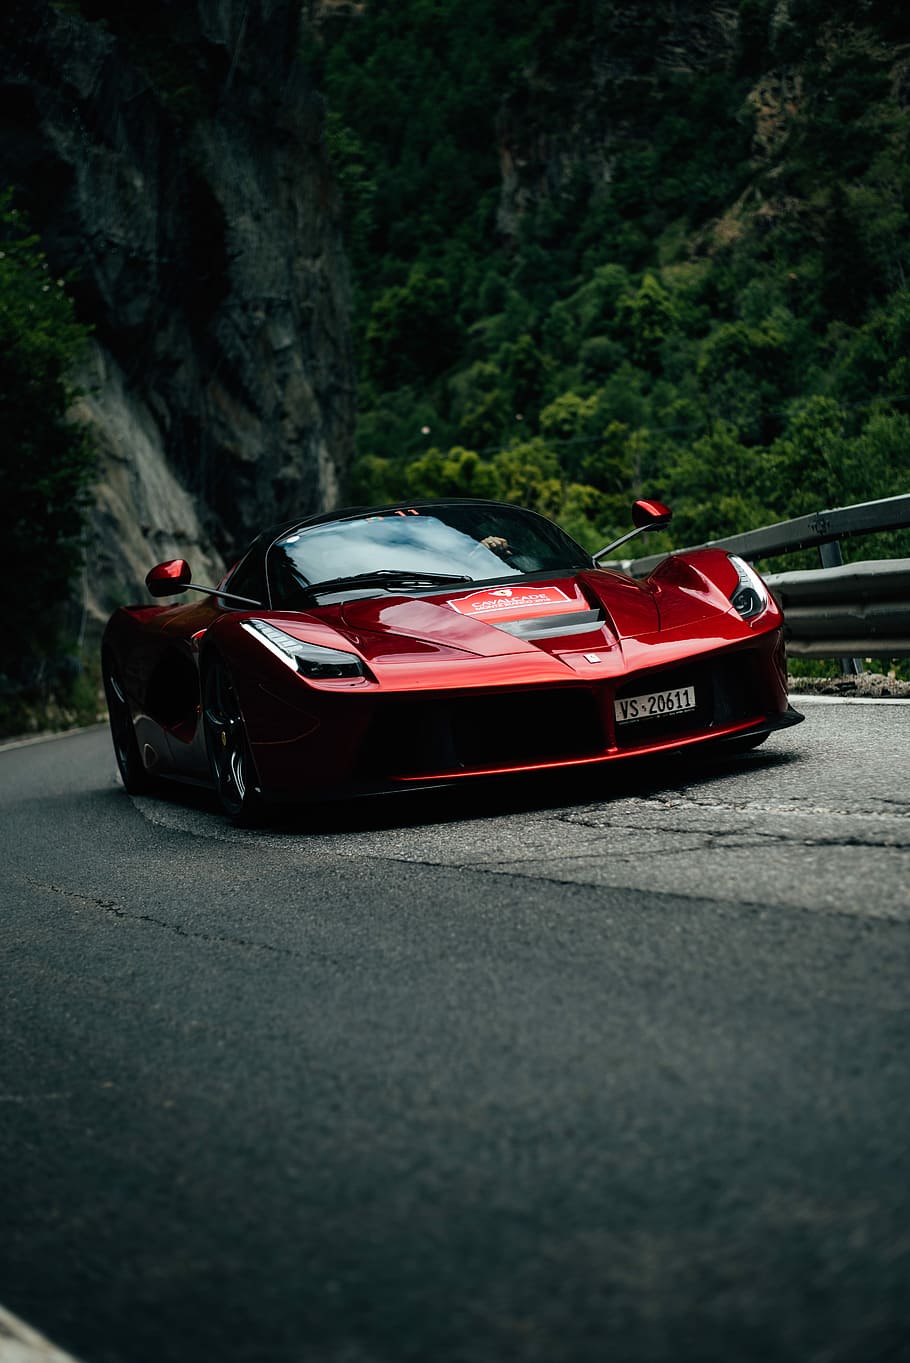 LAFERRARI, red Ferrari LaFerrari sports coupe on gray road, moody